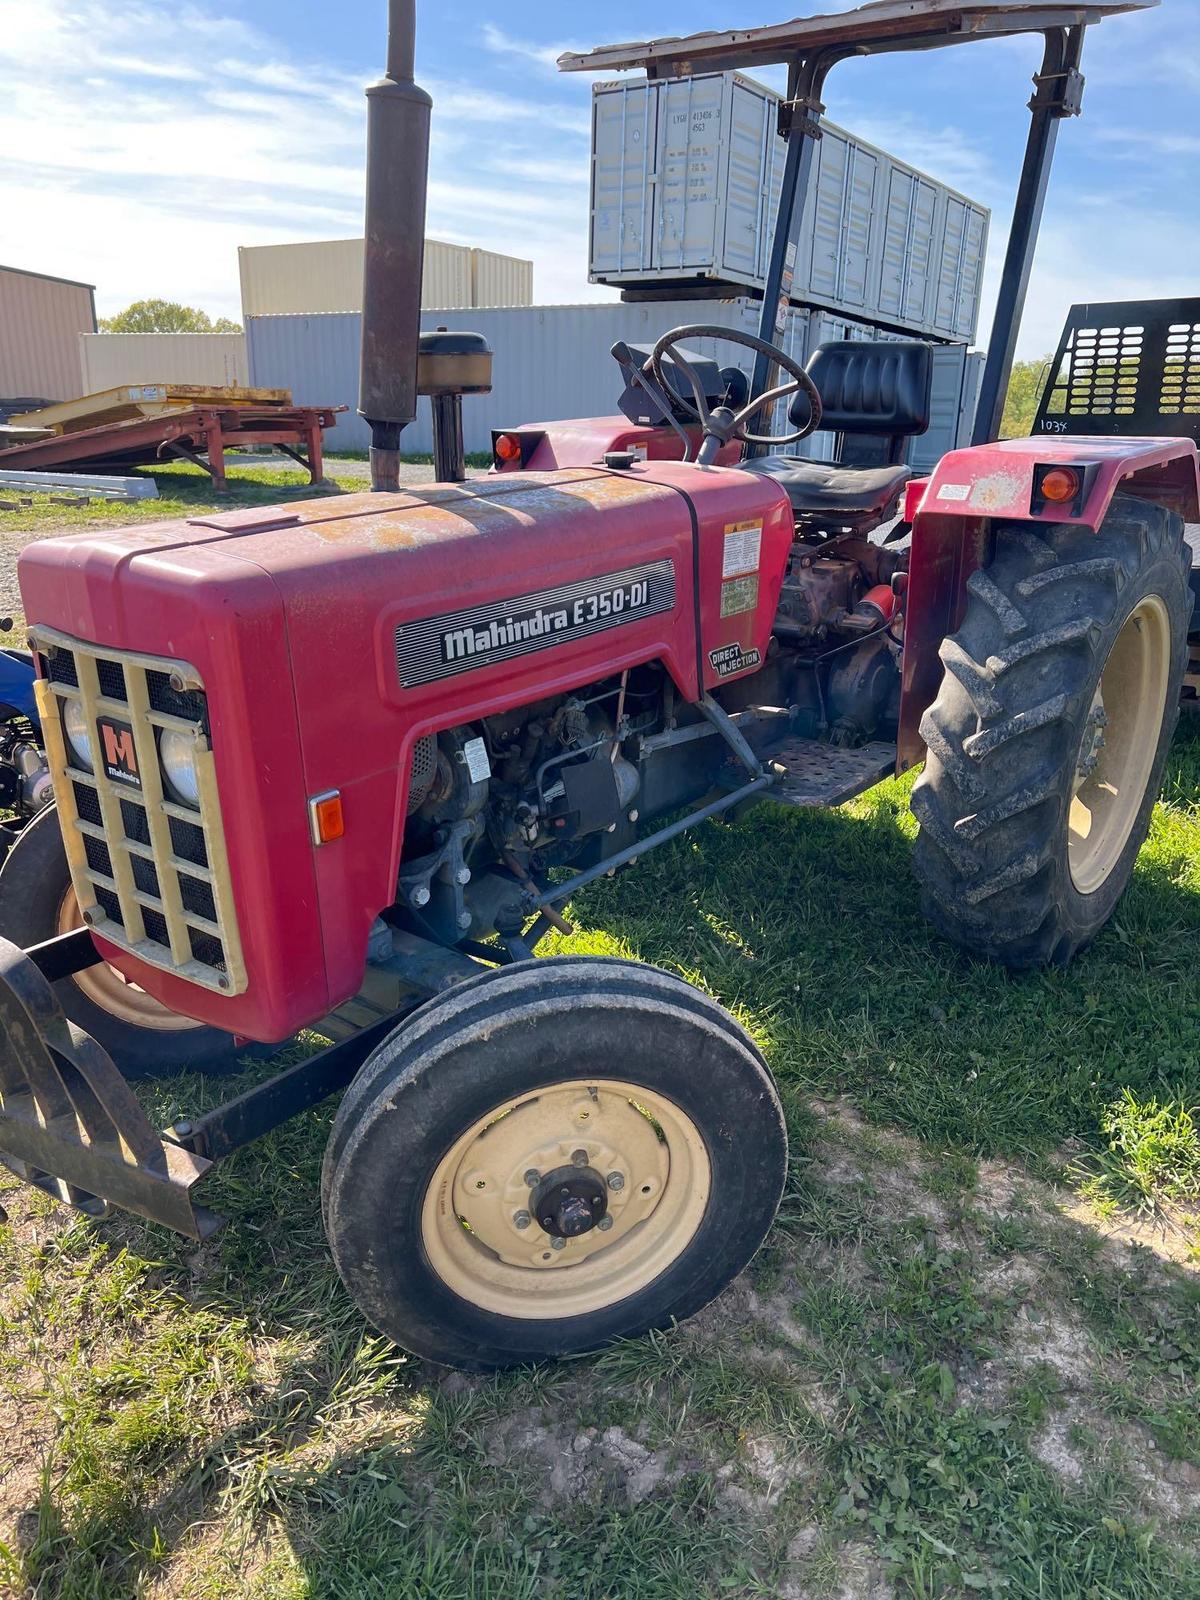 Mahindra tractor E350-DI